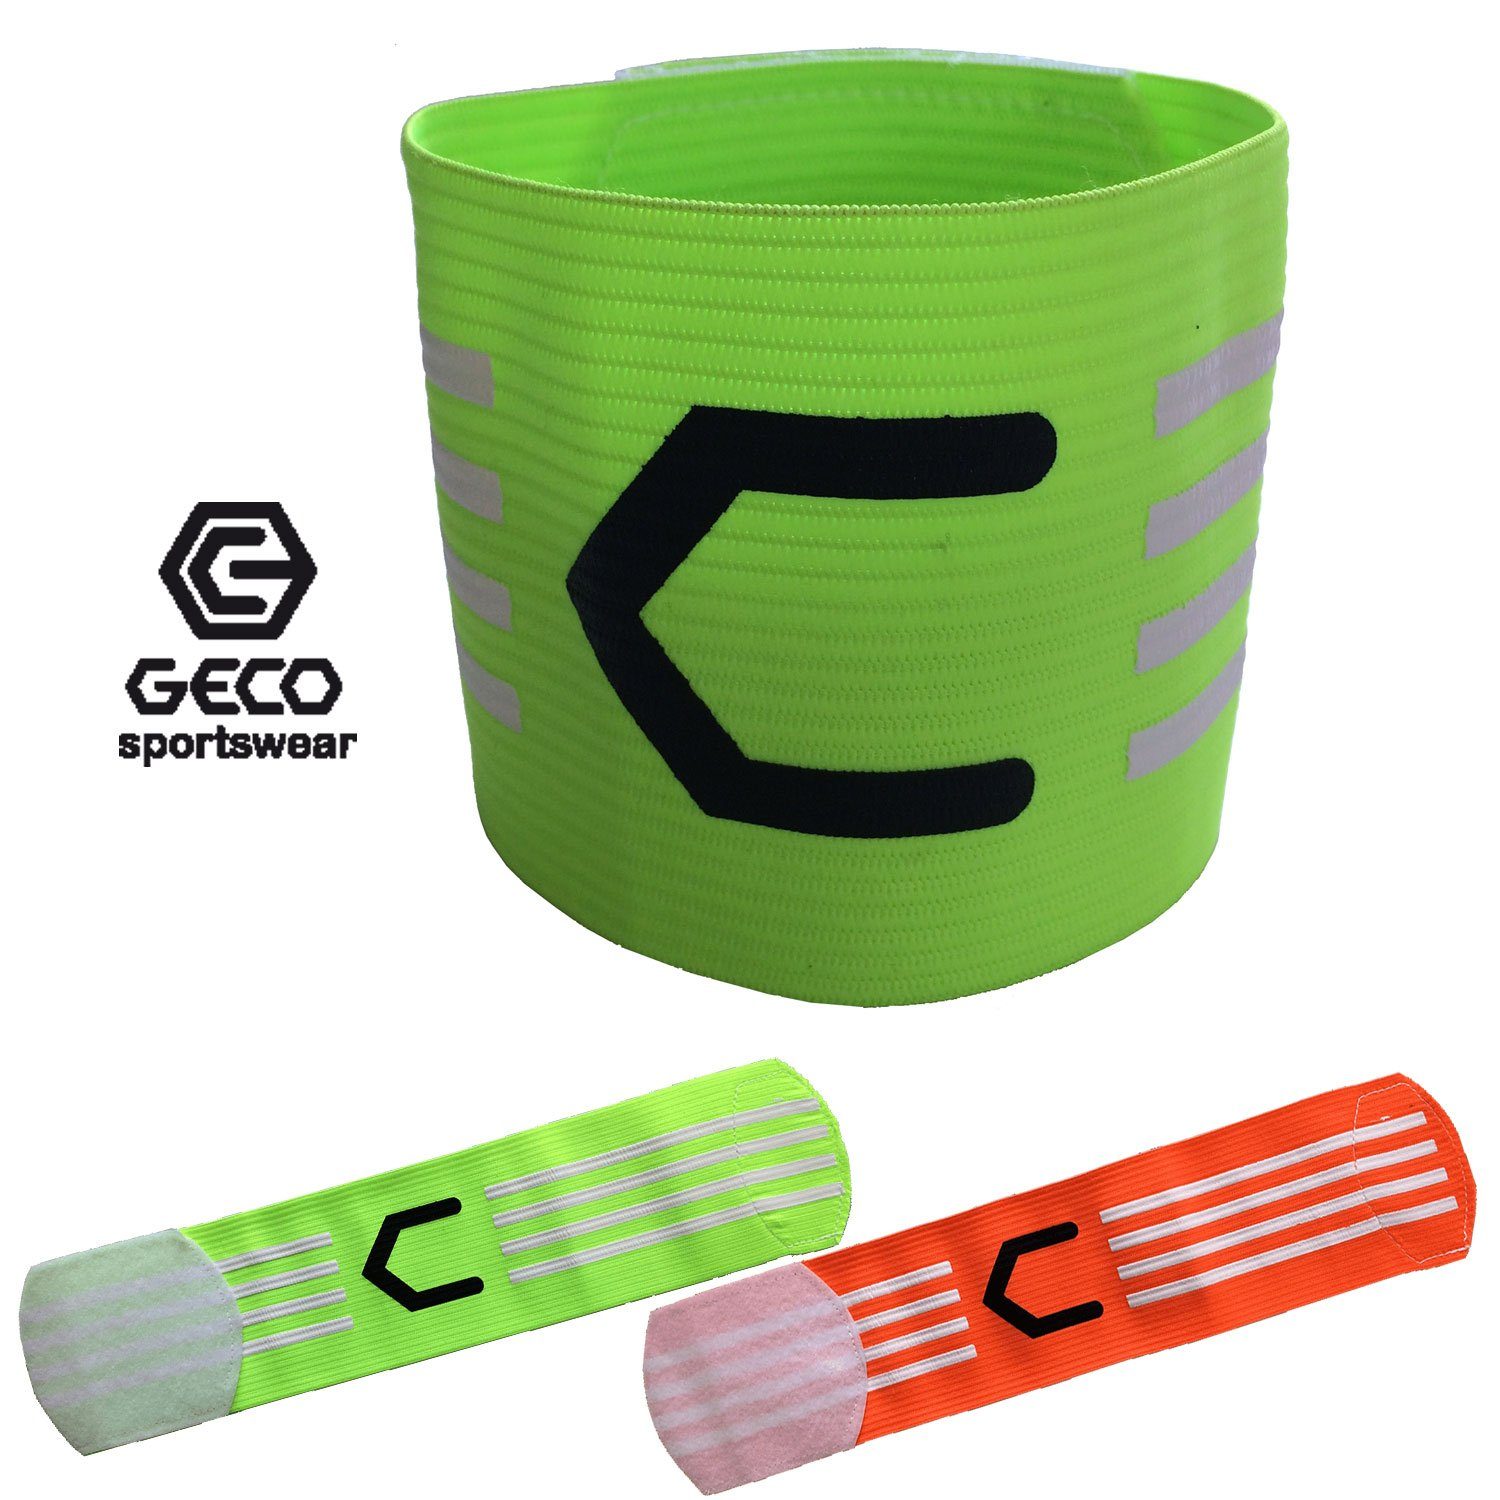 【Kostenloser Versand】 Geco Sportswear Kapitänsbinde Geco neon NEON grün orange, Fußball und oder grün orange Farben Kapitänsbinde